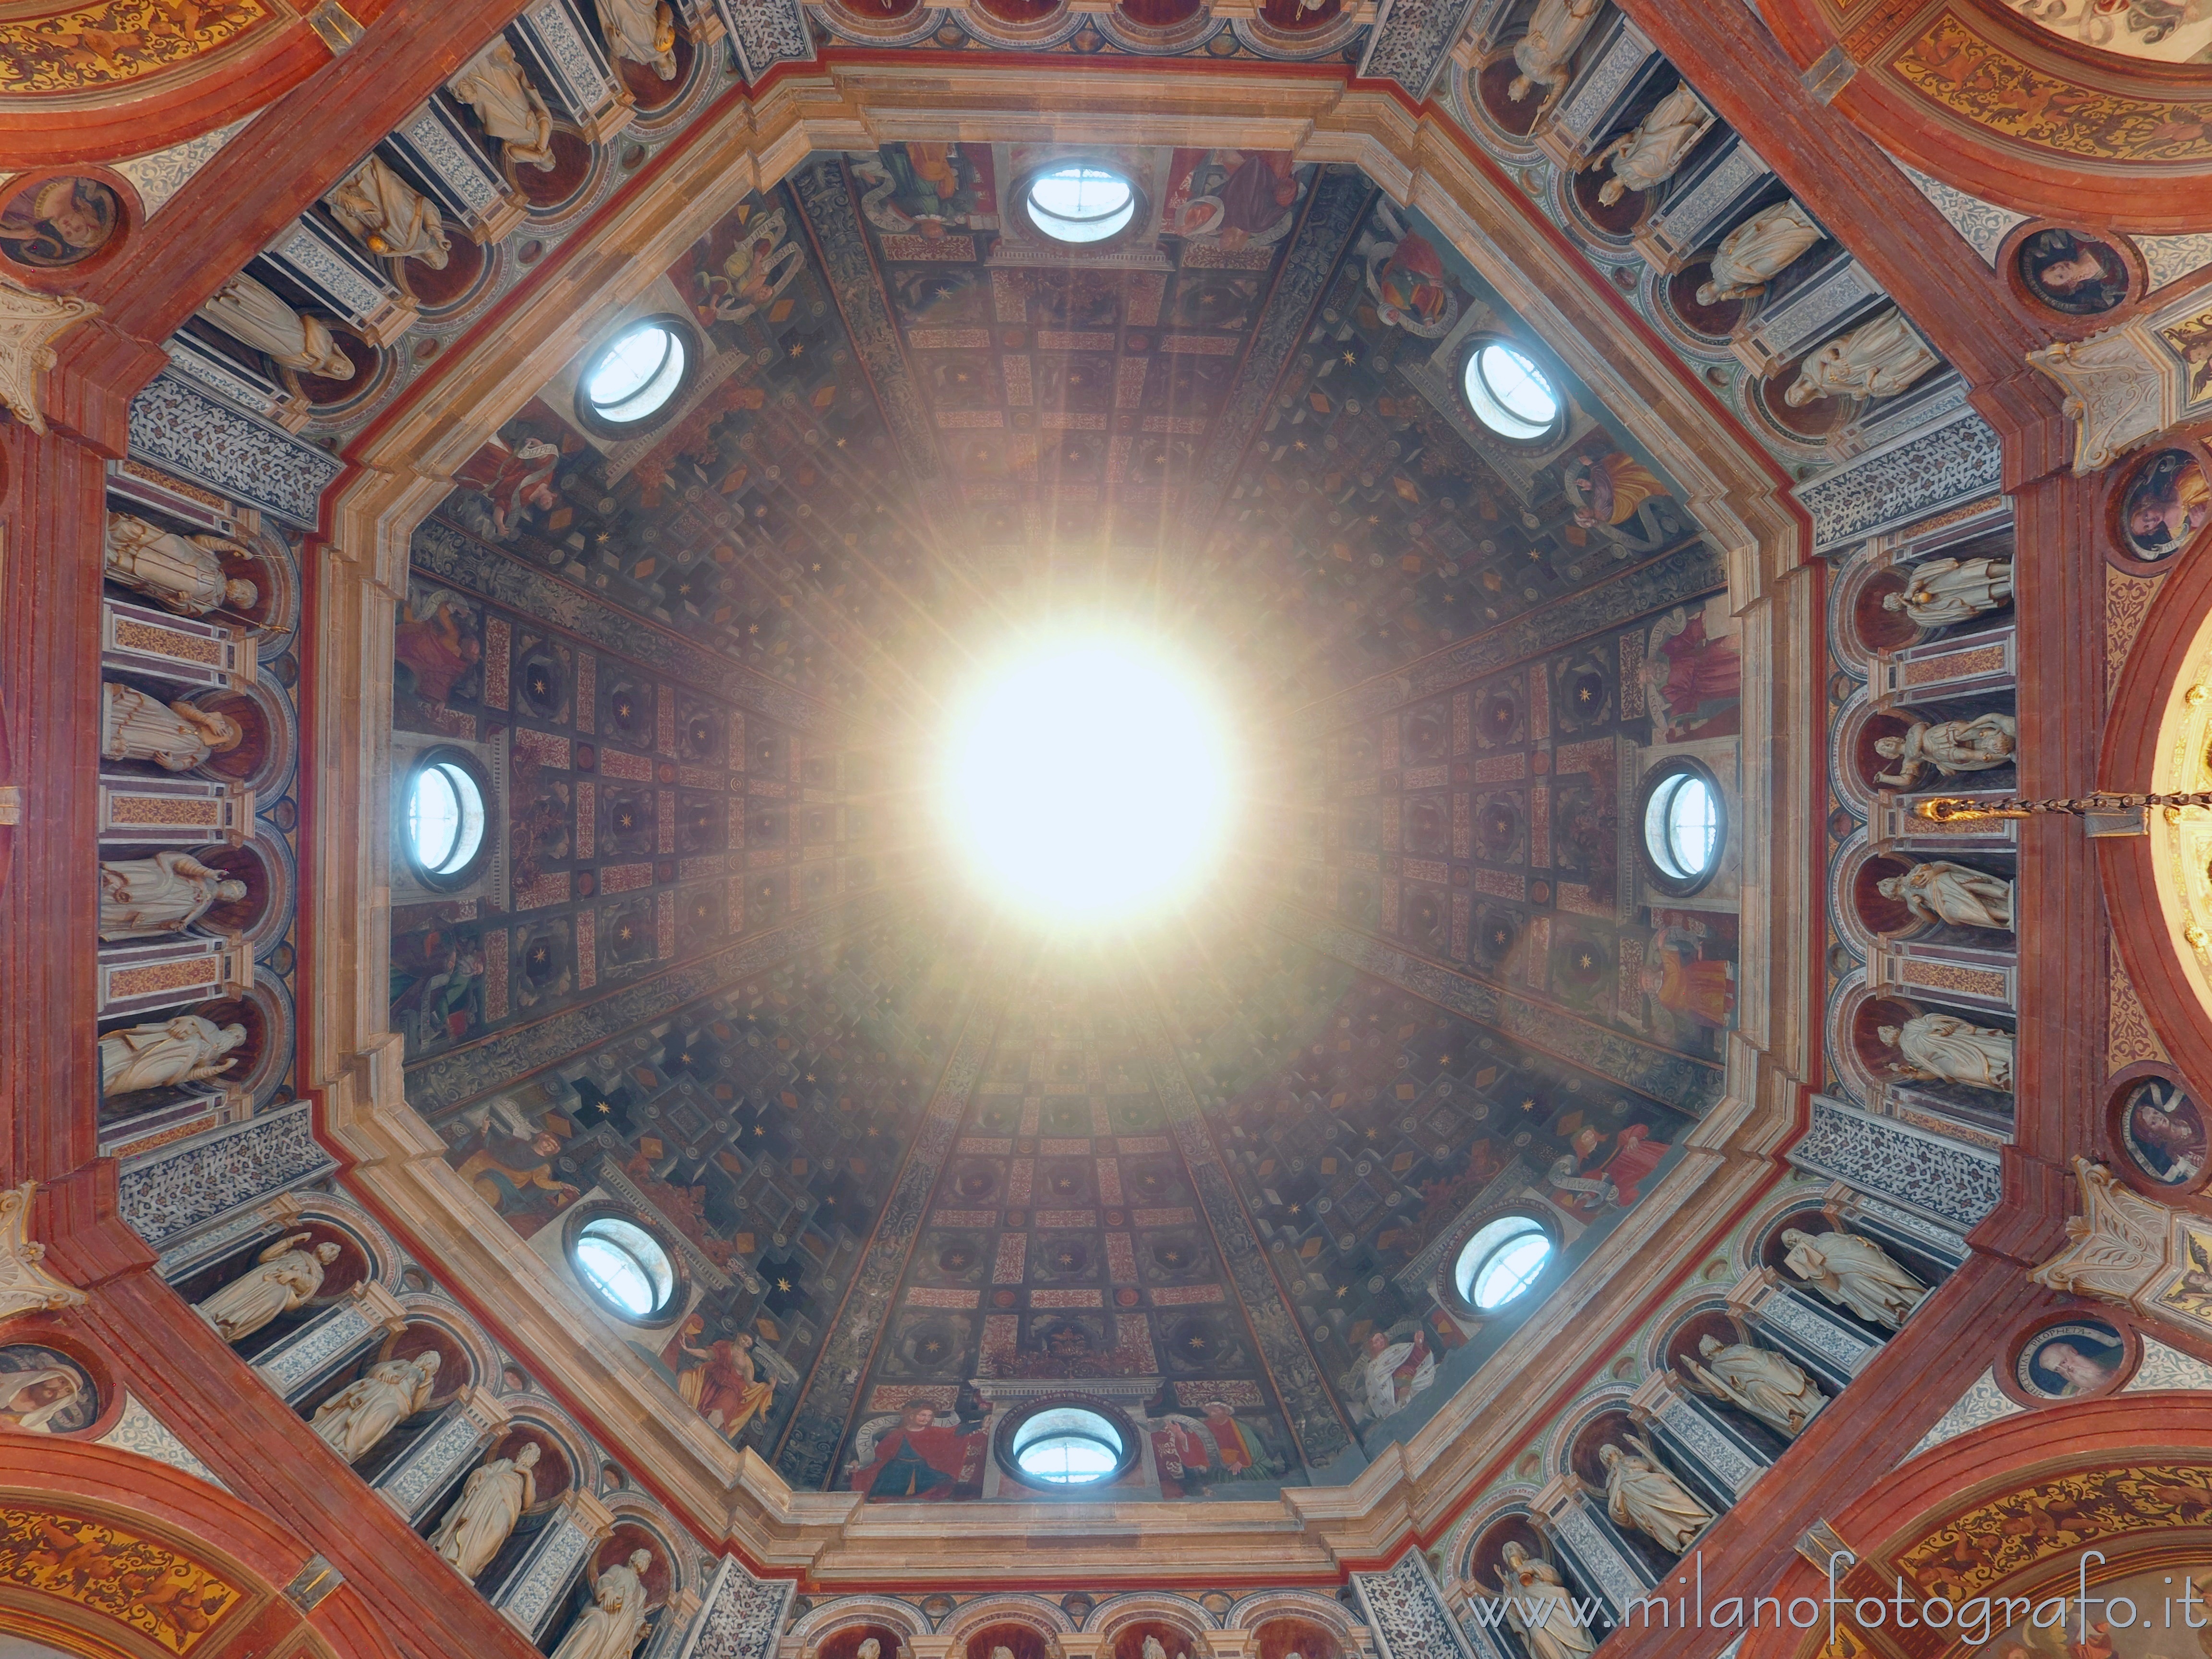 Busto Arsizio (Varese): Interno della cupola del Santuario di Santa Maria di Piazza - Busto Arsizio (Varese)